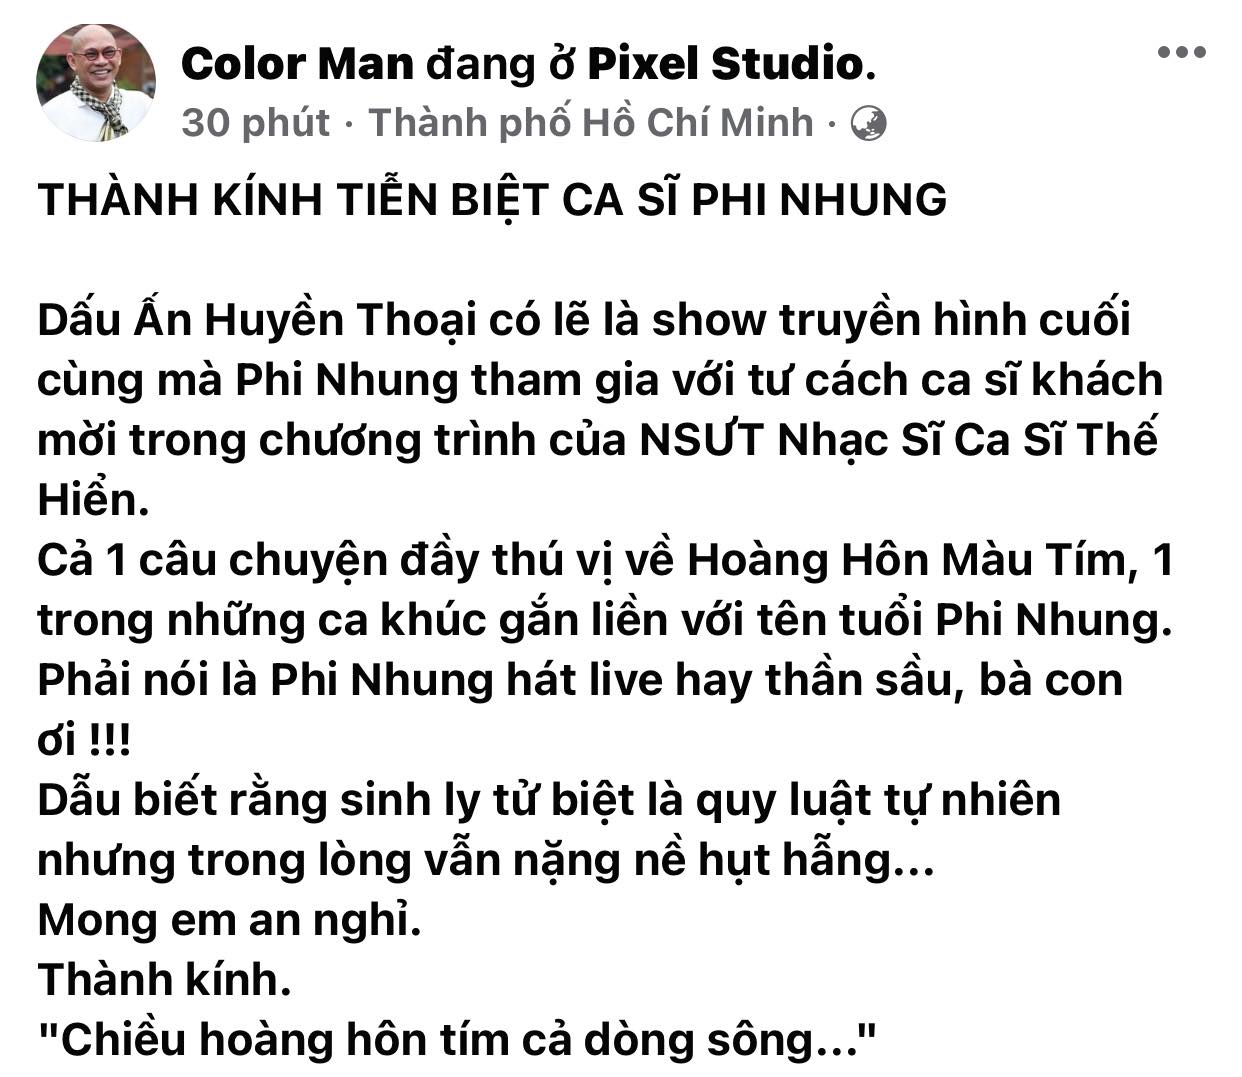 Trung-tam-thuy-nga-colorman-truong-giang-dam-vinh-hung-dau-xot-noi-loi-tien-biet-phi-nhung-2